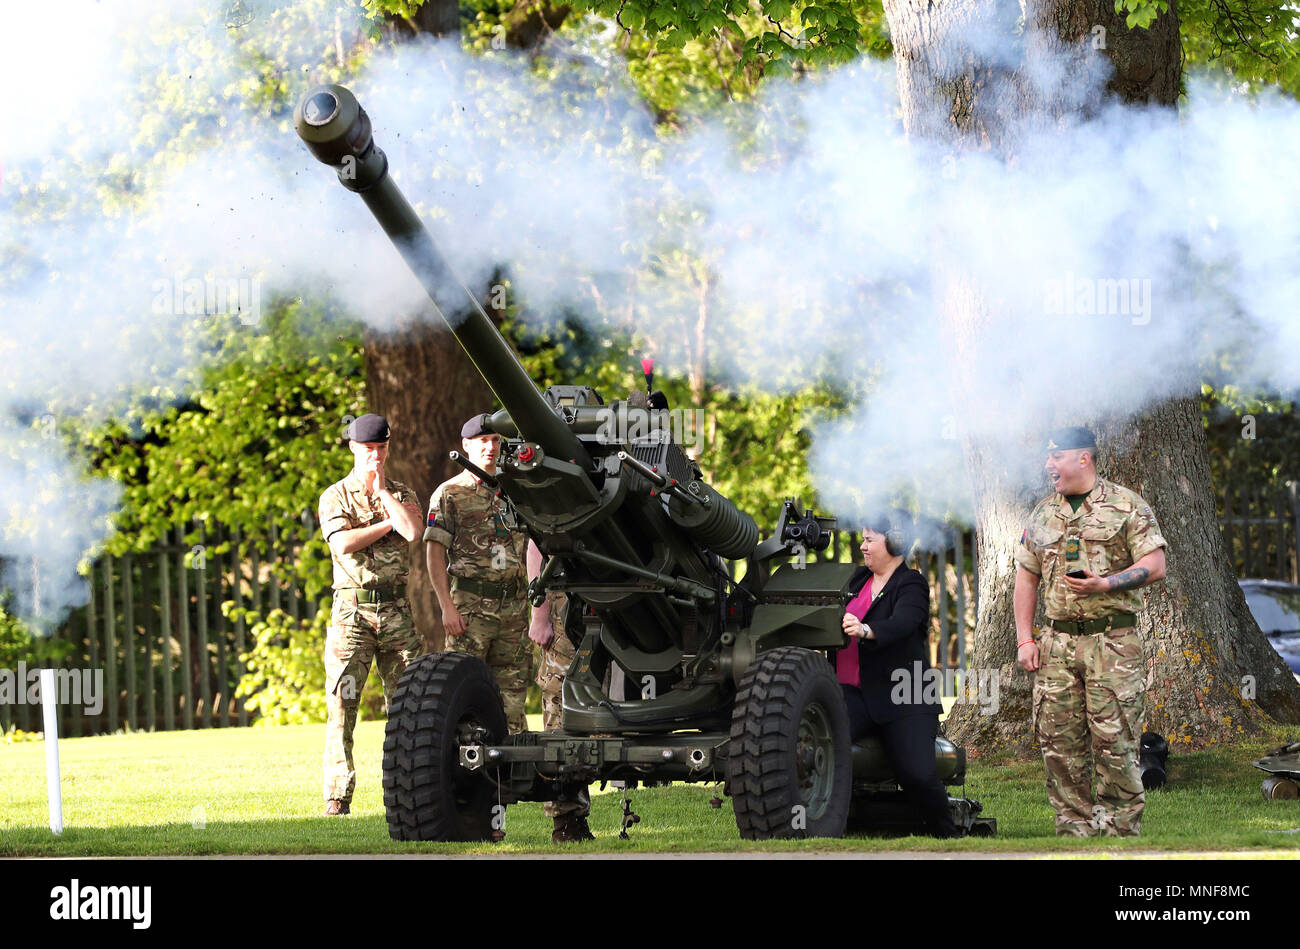 Le chef conservateur écossais Ruth Davidson déclenche le 105e régiment, le canon d'Artillerie royale, pour signaler le début de l'ABF la charité des soldats à la compétition de golf annuelle Duddingston Golf. Banque D'Images